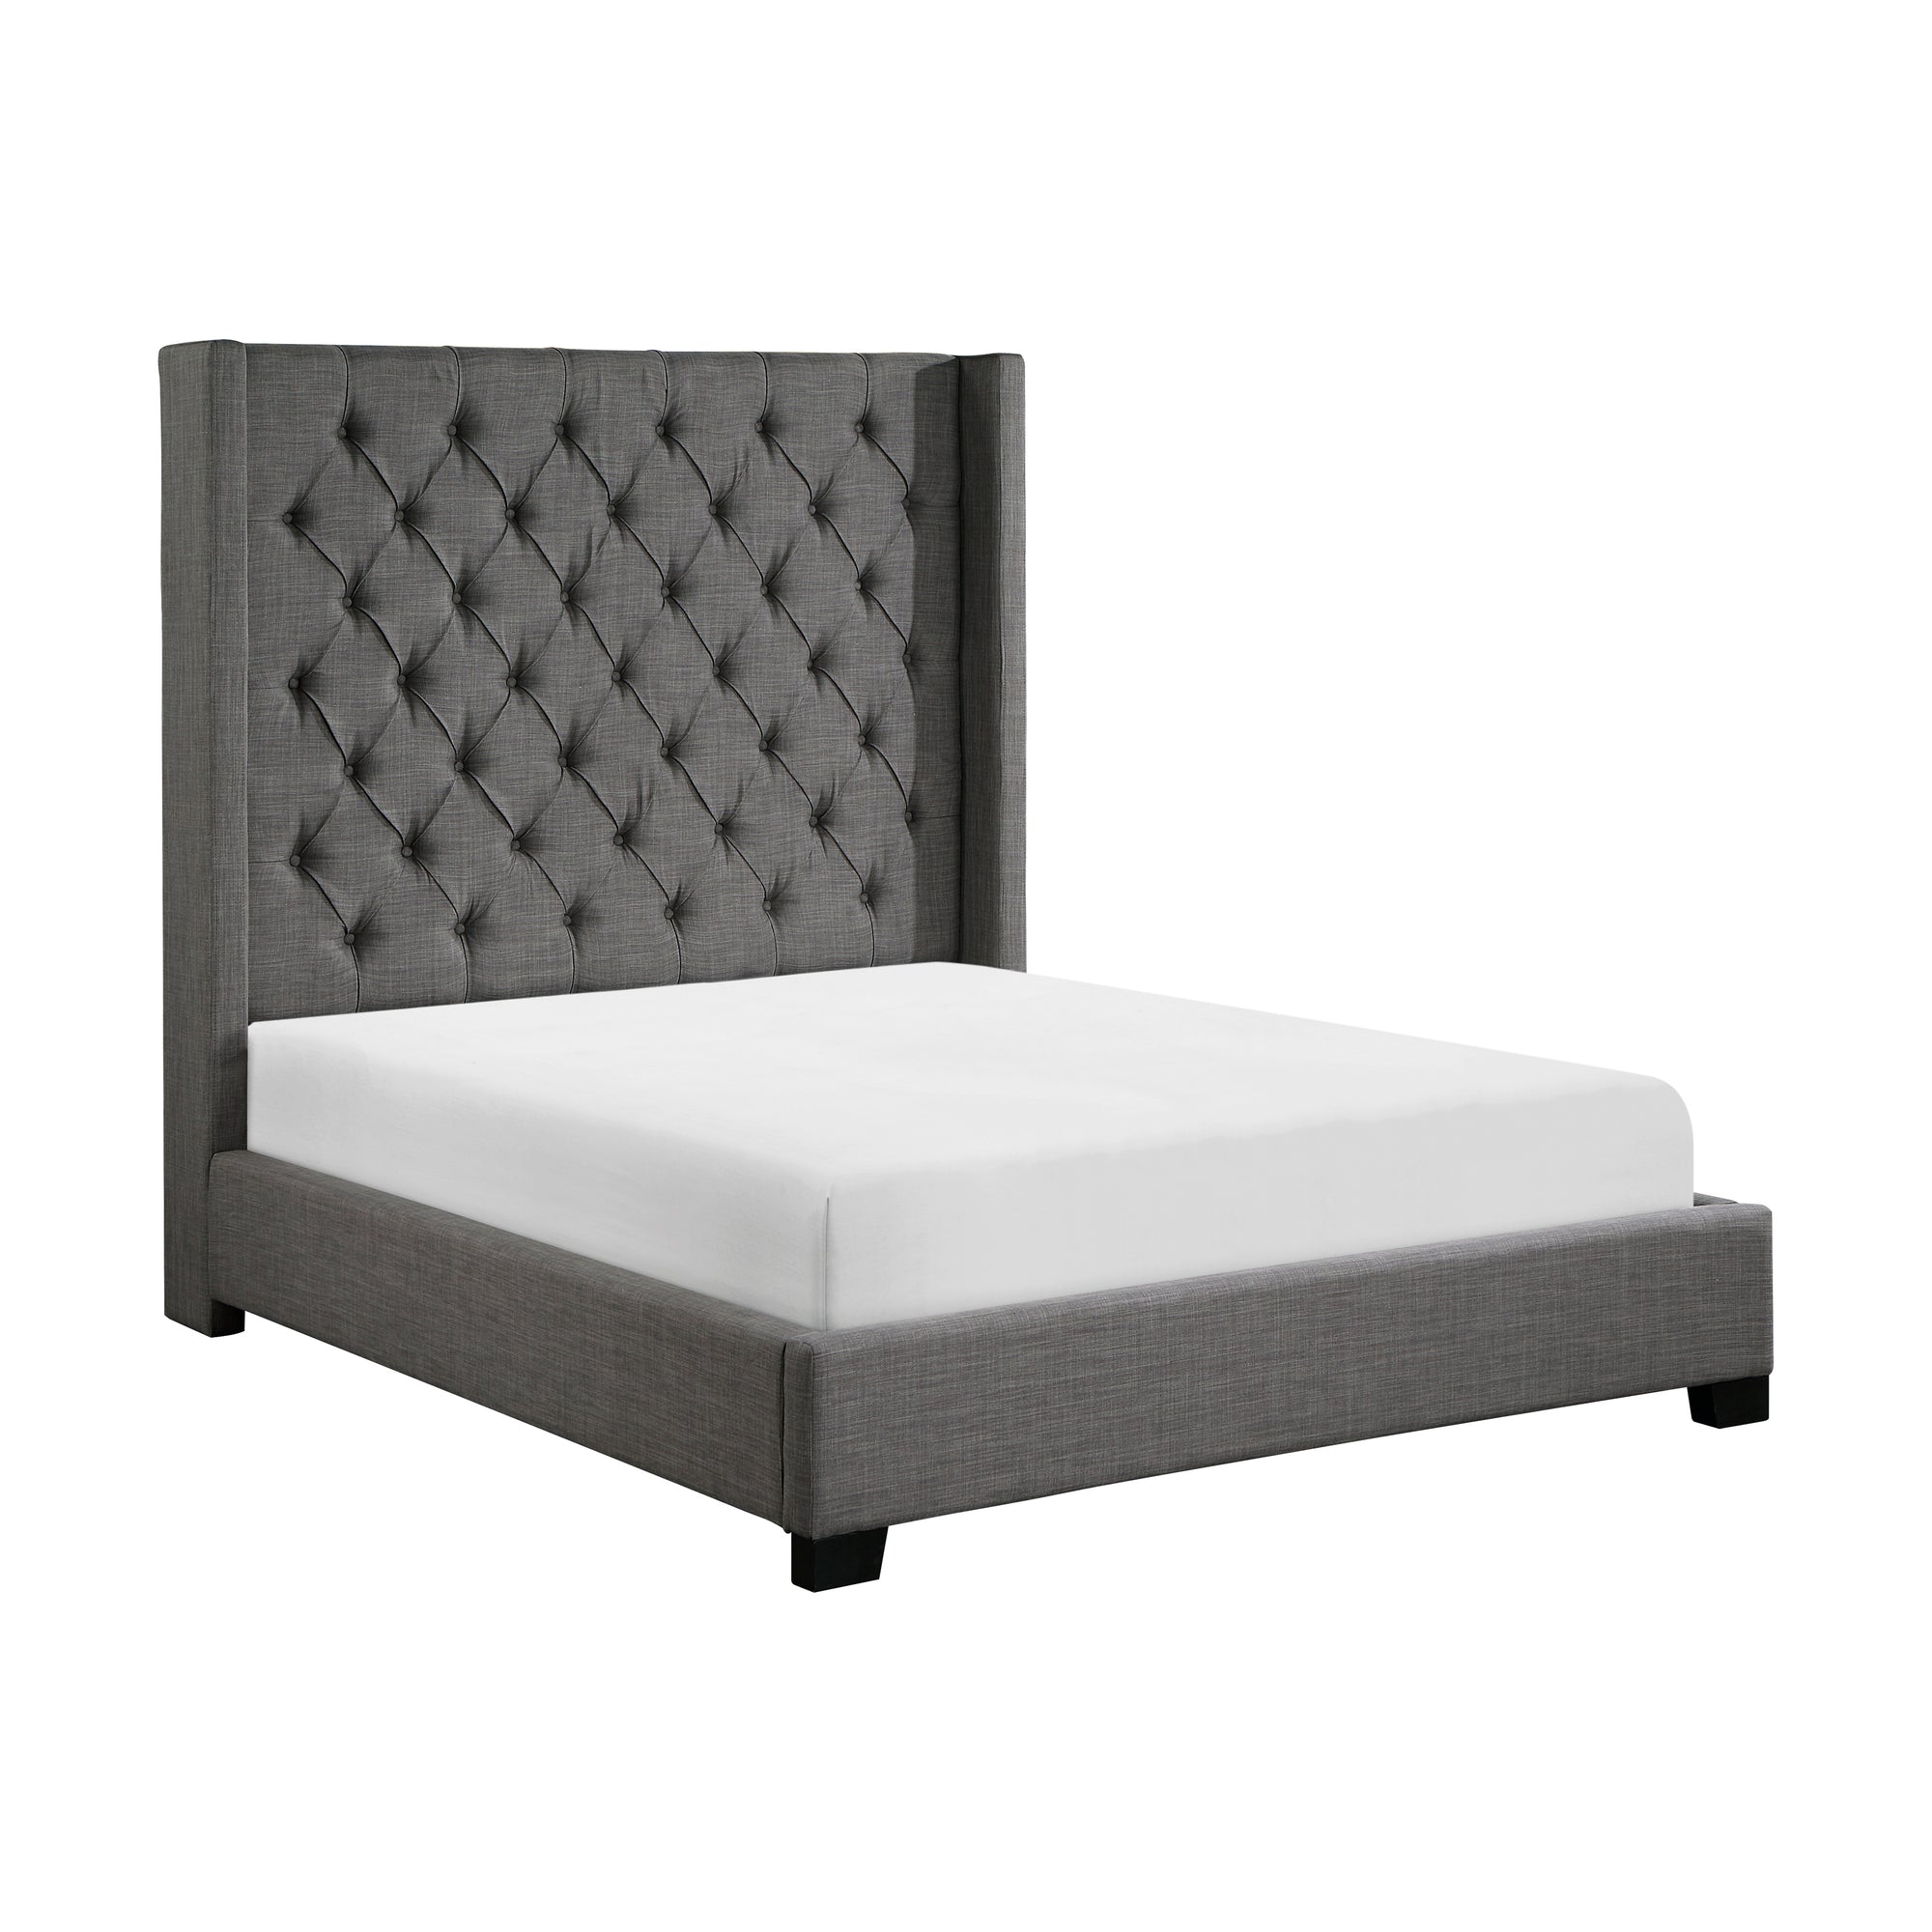 Cobnut Upholstered Panel Bed, Queen